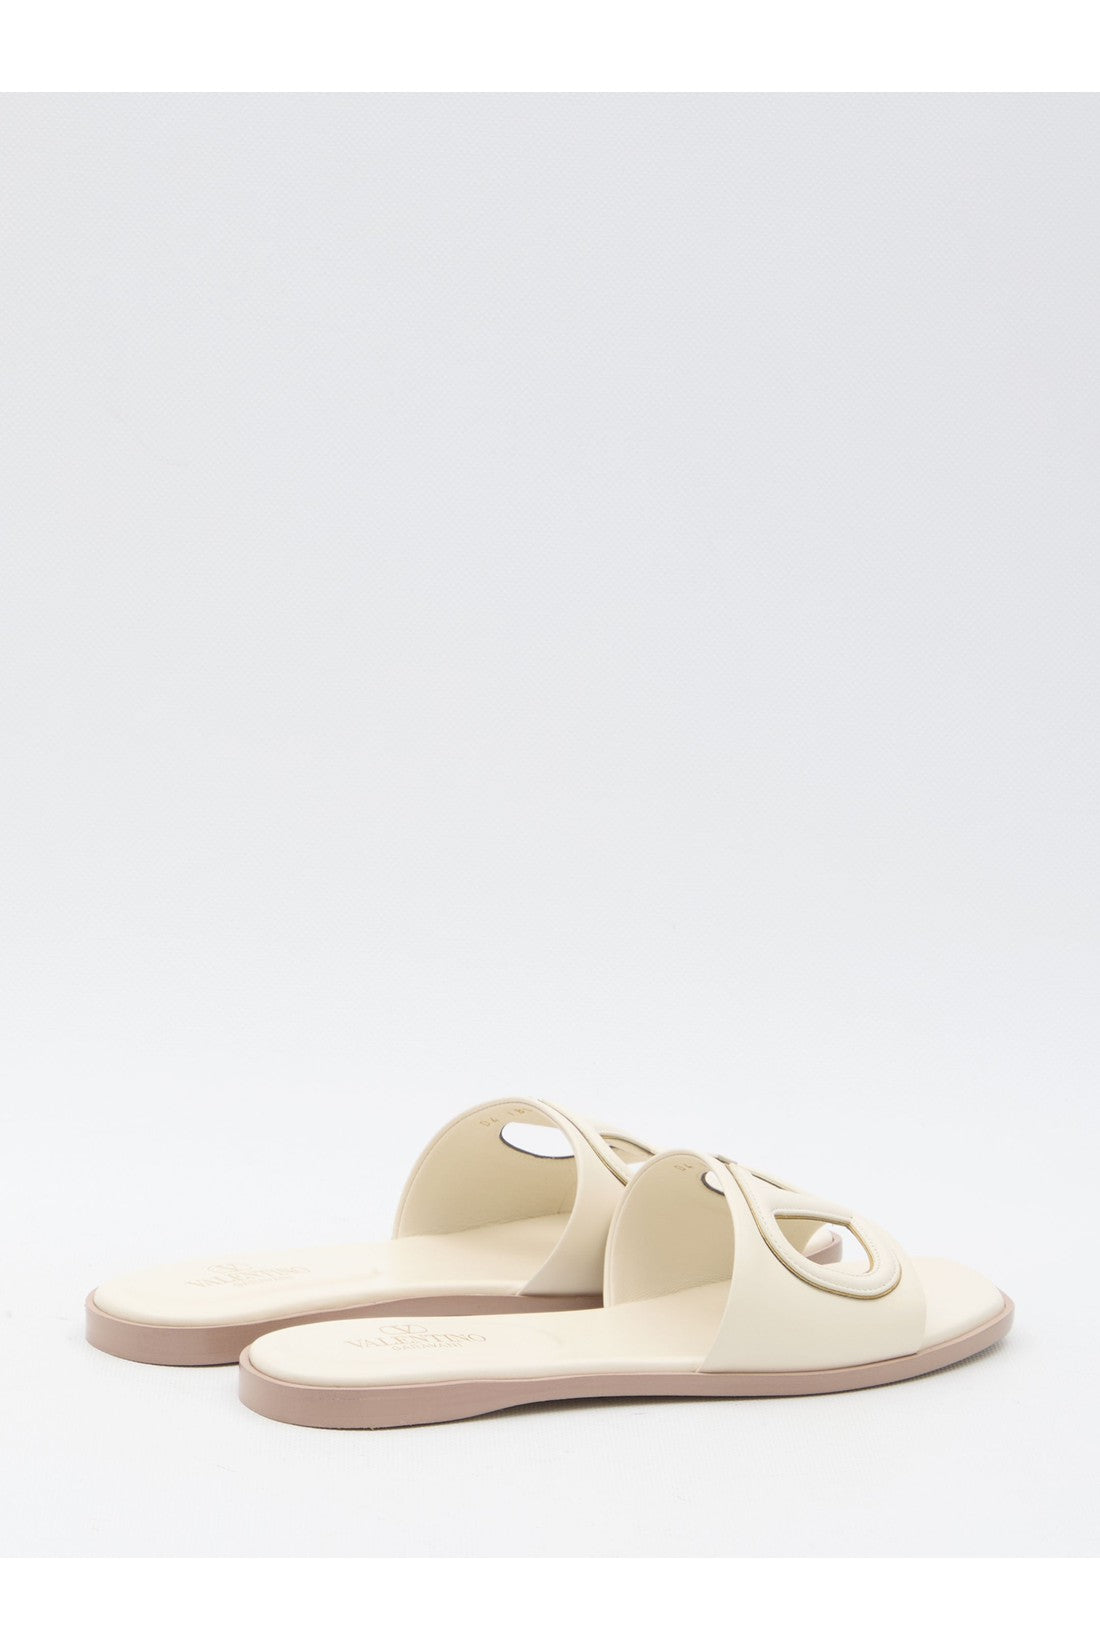 VLogo Slide sandals